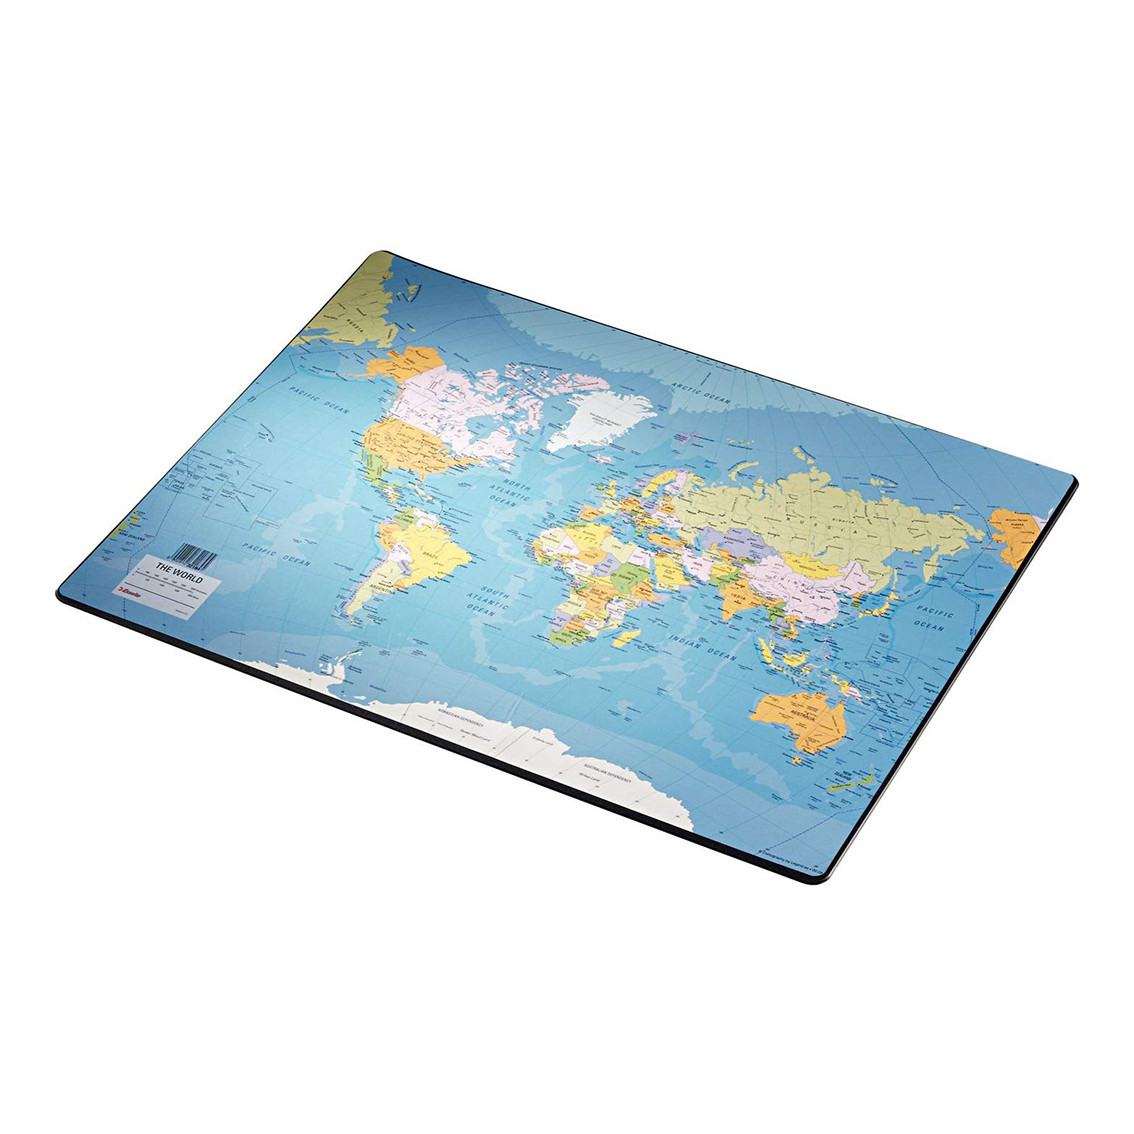 Підкладка на стіл Esselte 40*53см, мапа світу, арт.32184